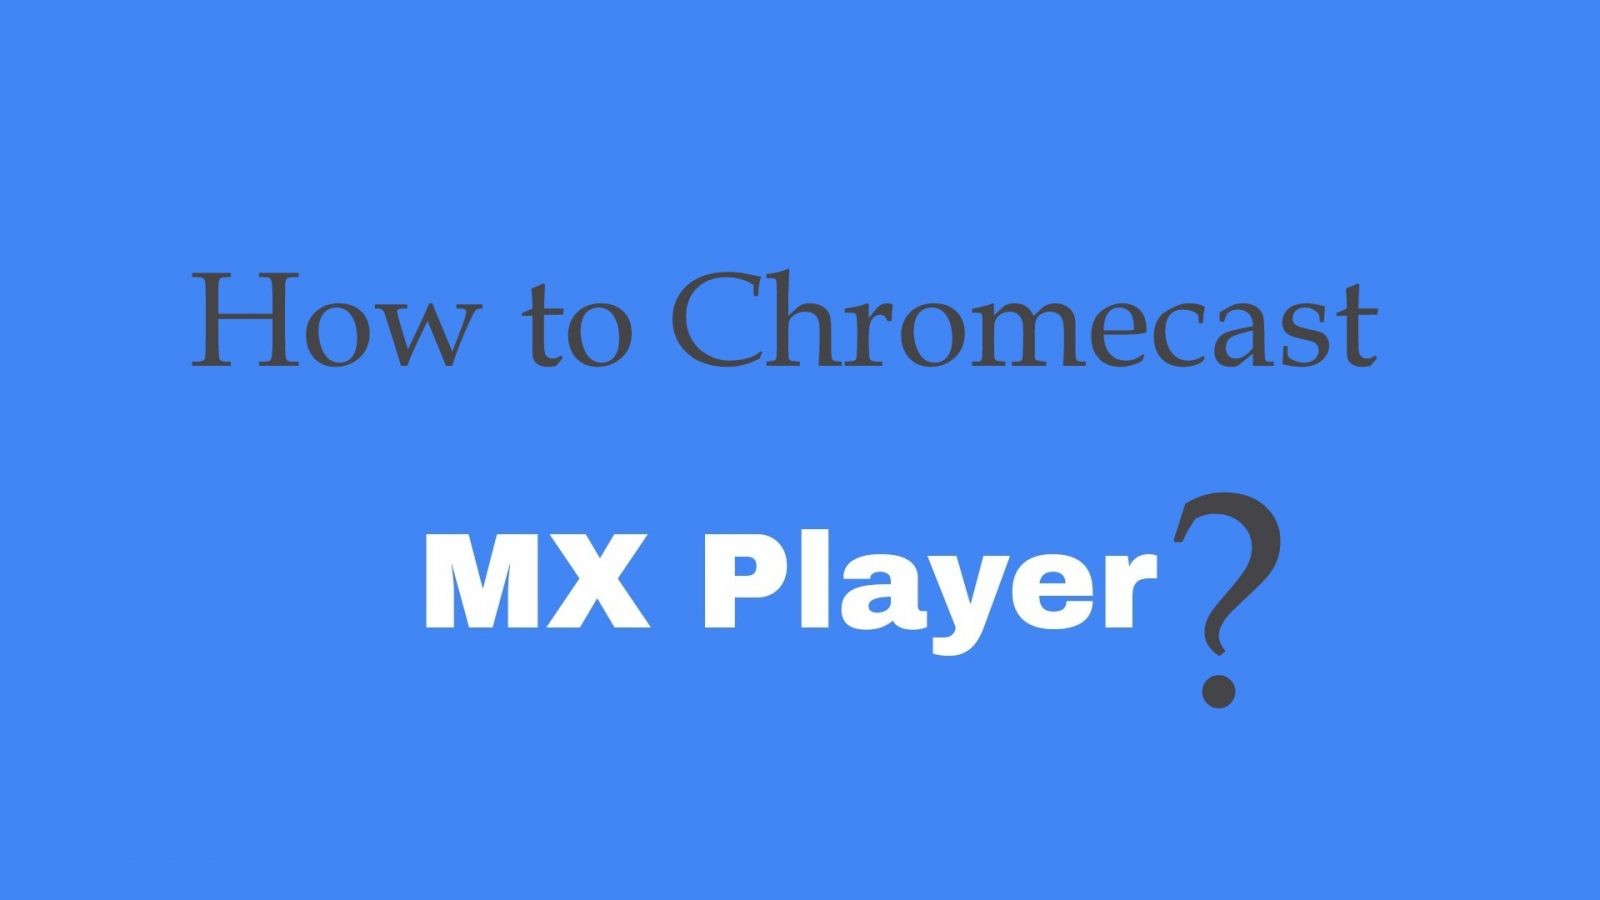 How to Chromecast MX Player to TV?